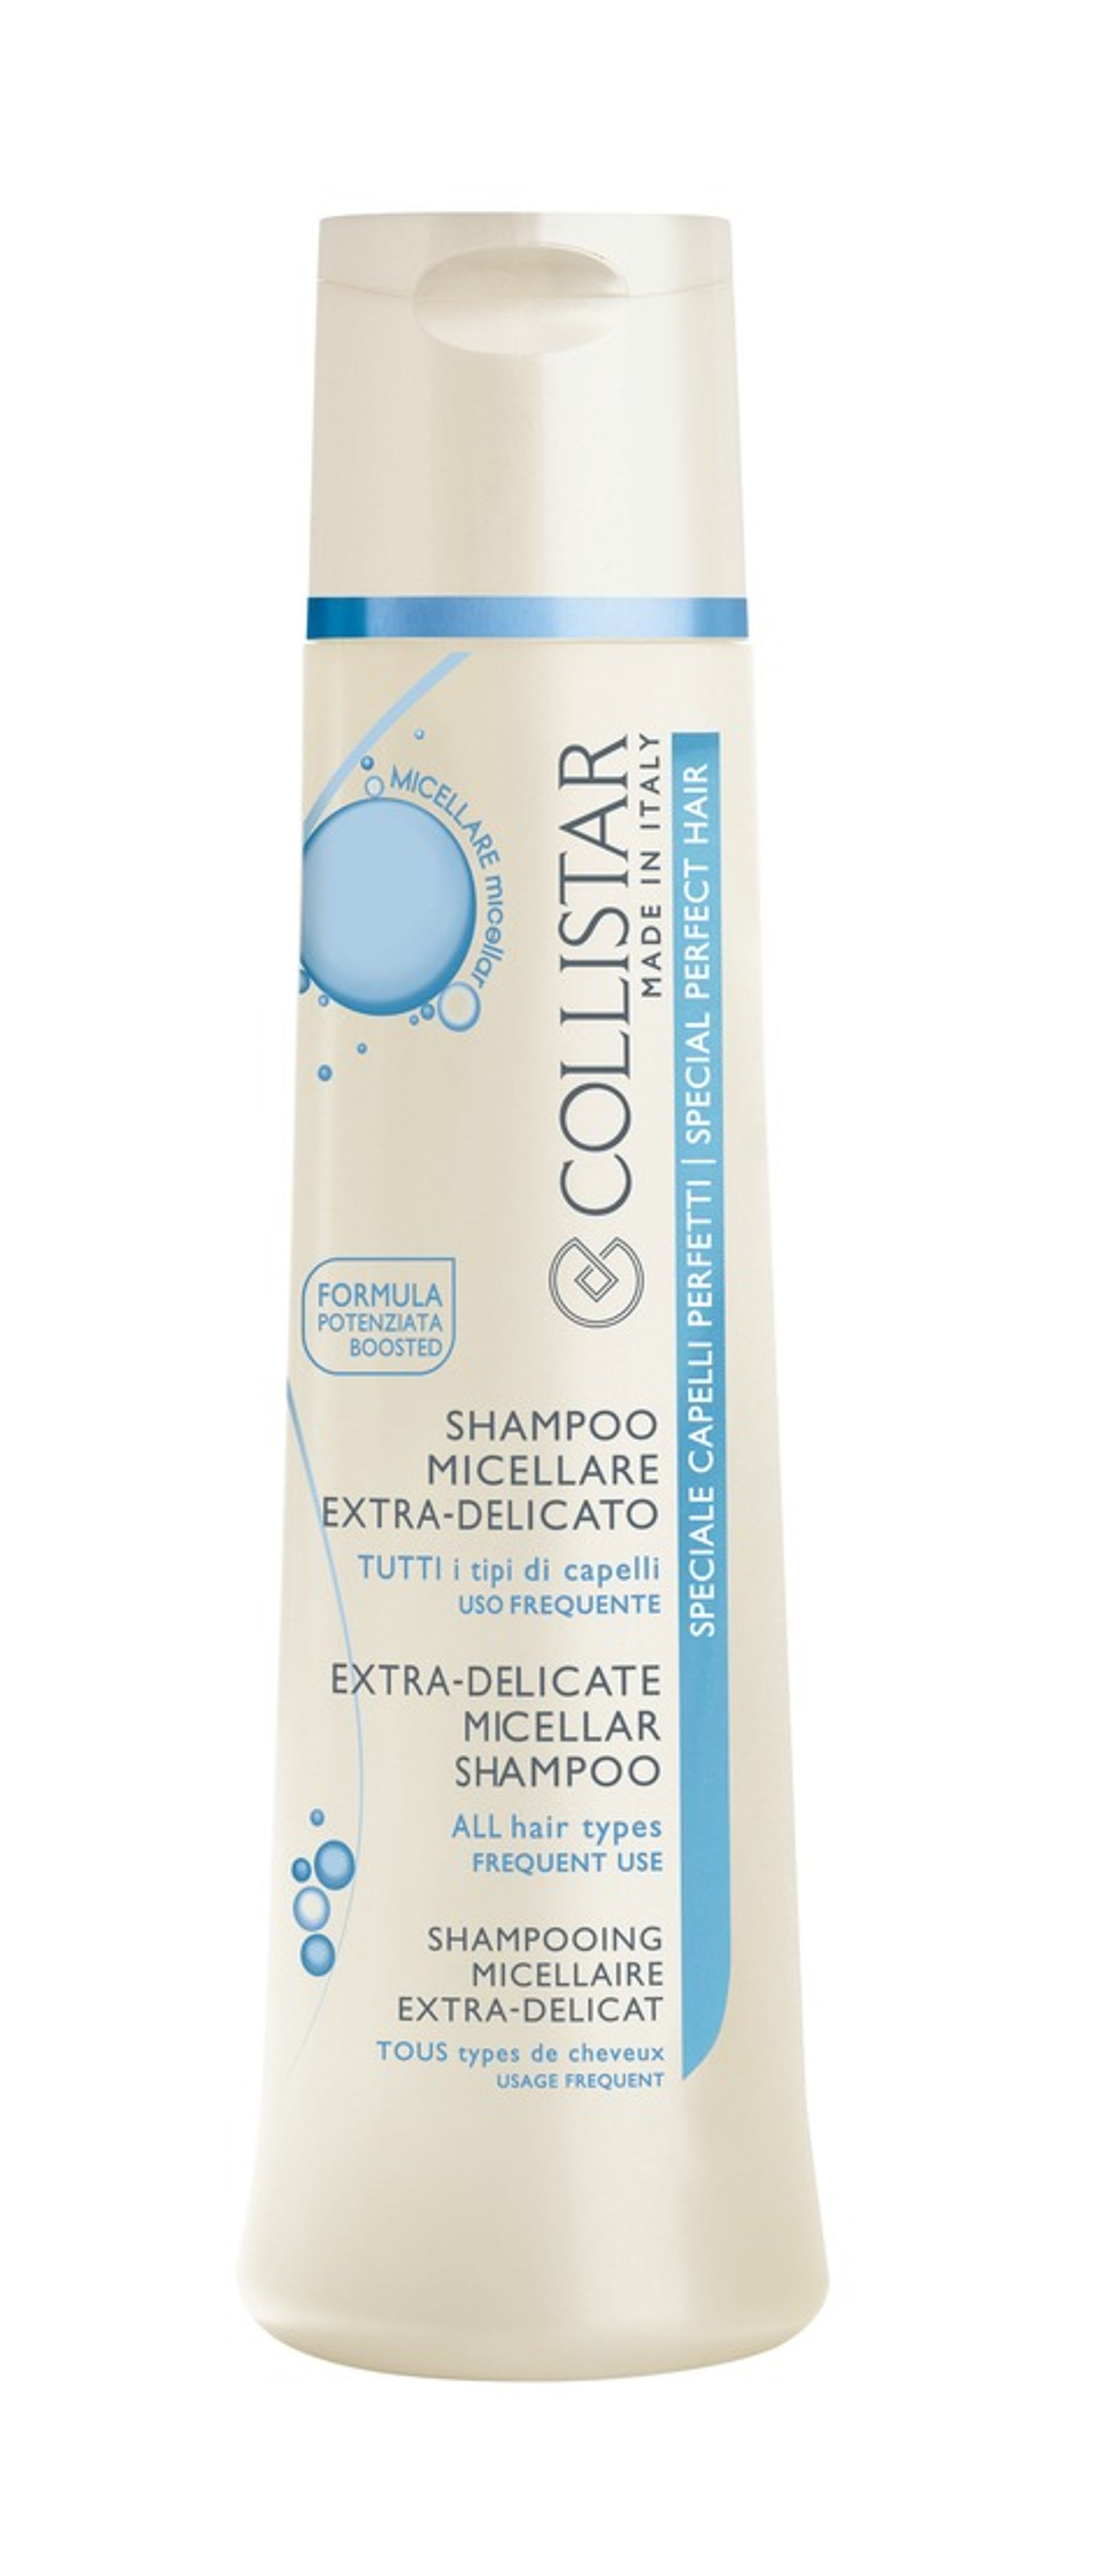 Collistar Shampoo Micellare Extra Delicato 1